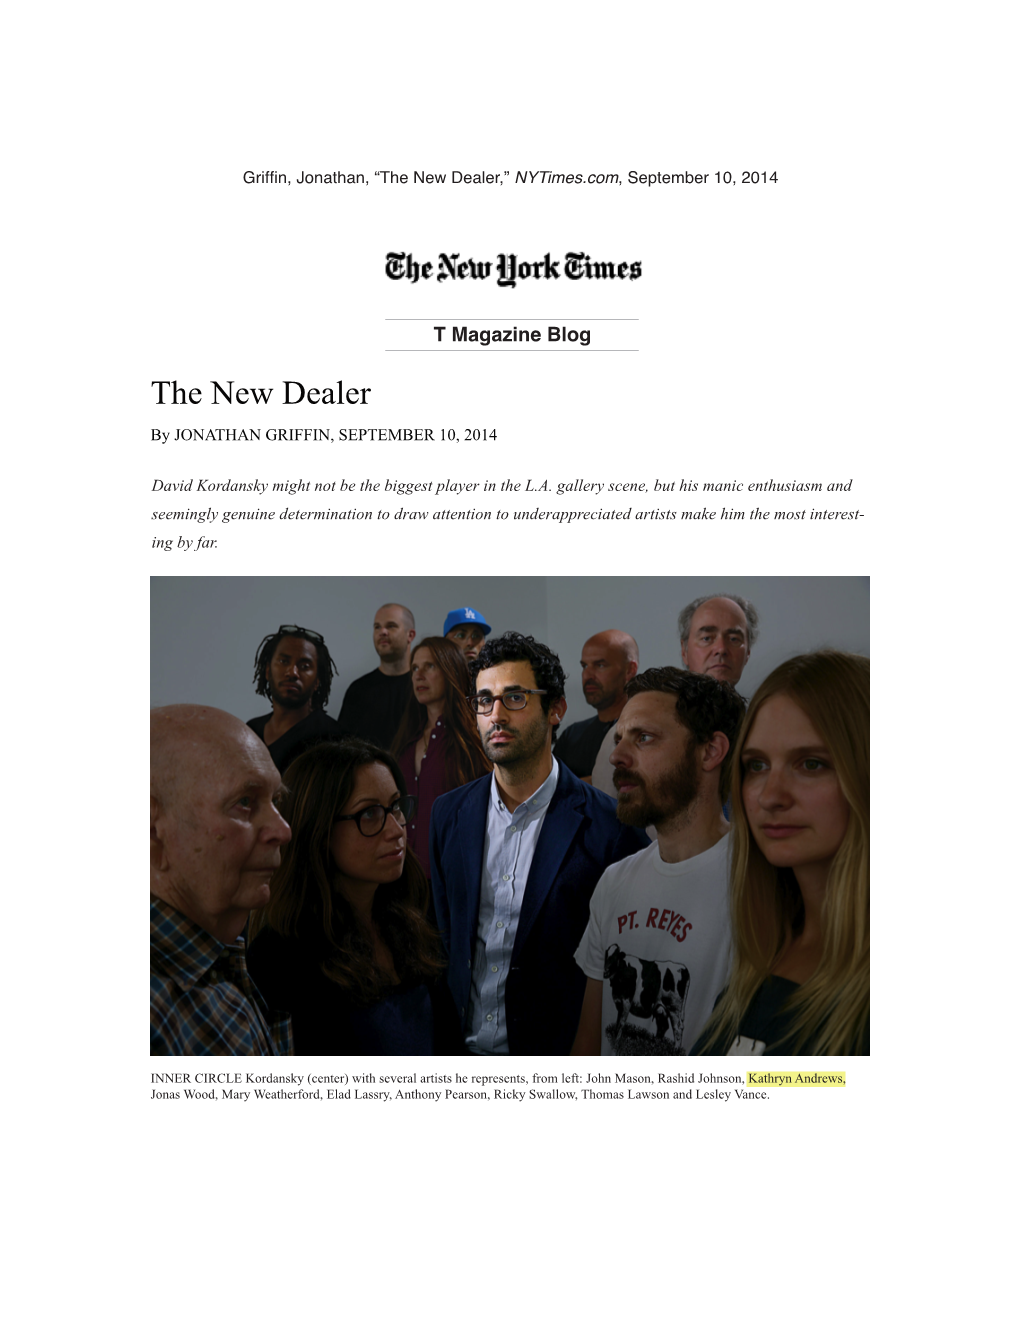 The New Dealer,” Nytimes.Com, September 10, 2014